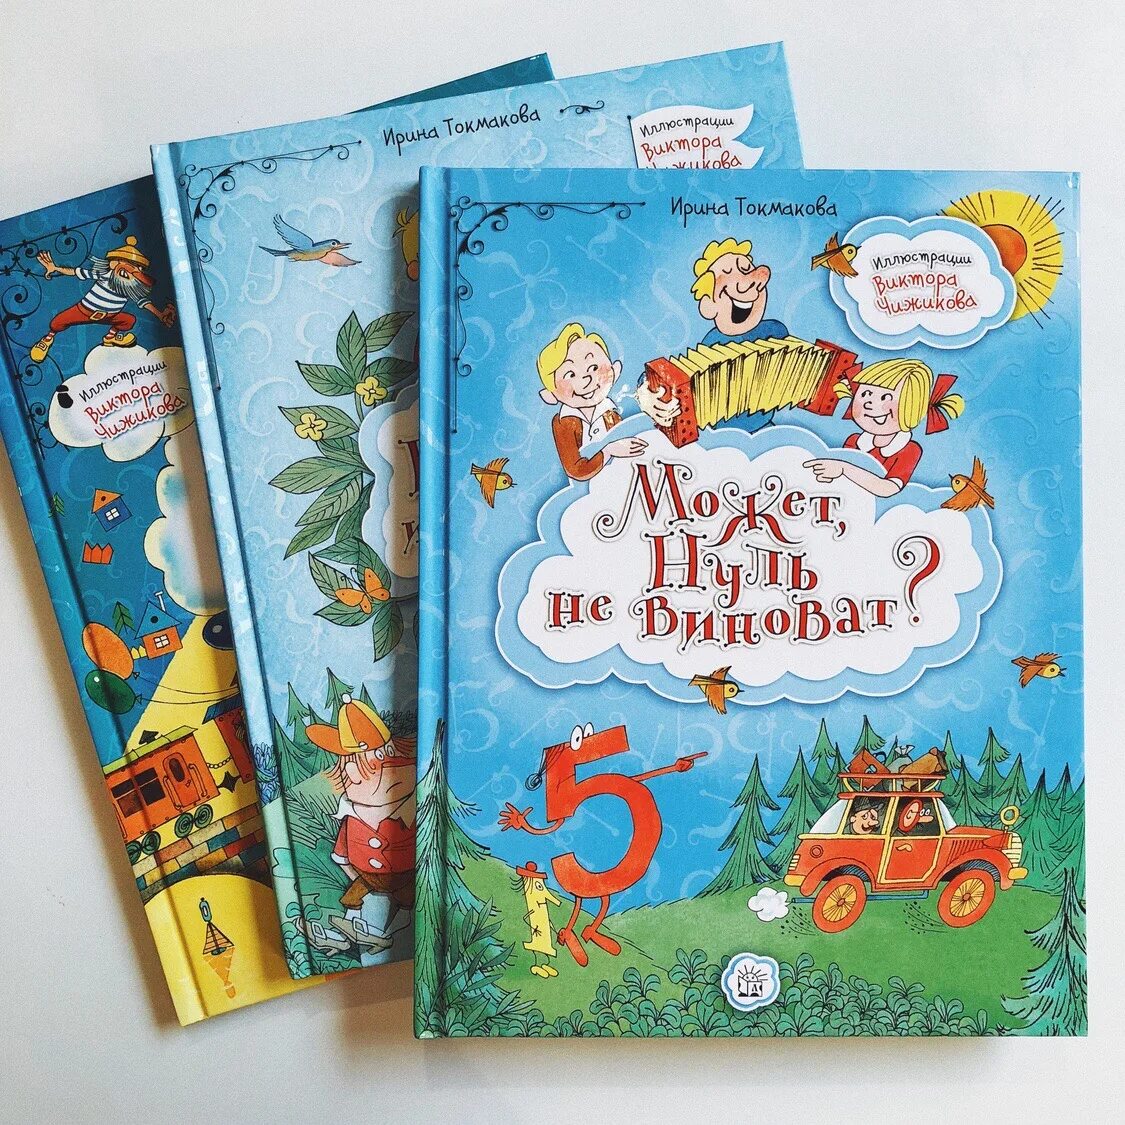 Токмакова книги для детей. Книги Токмаковой для детей.